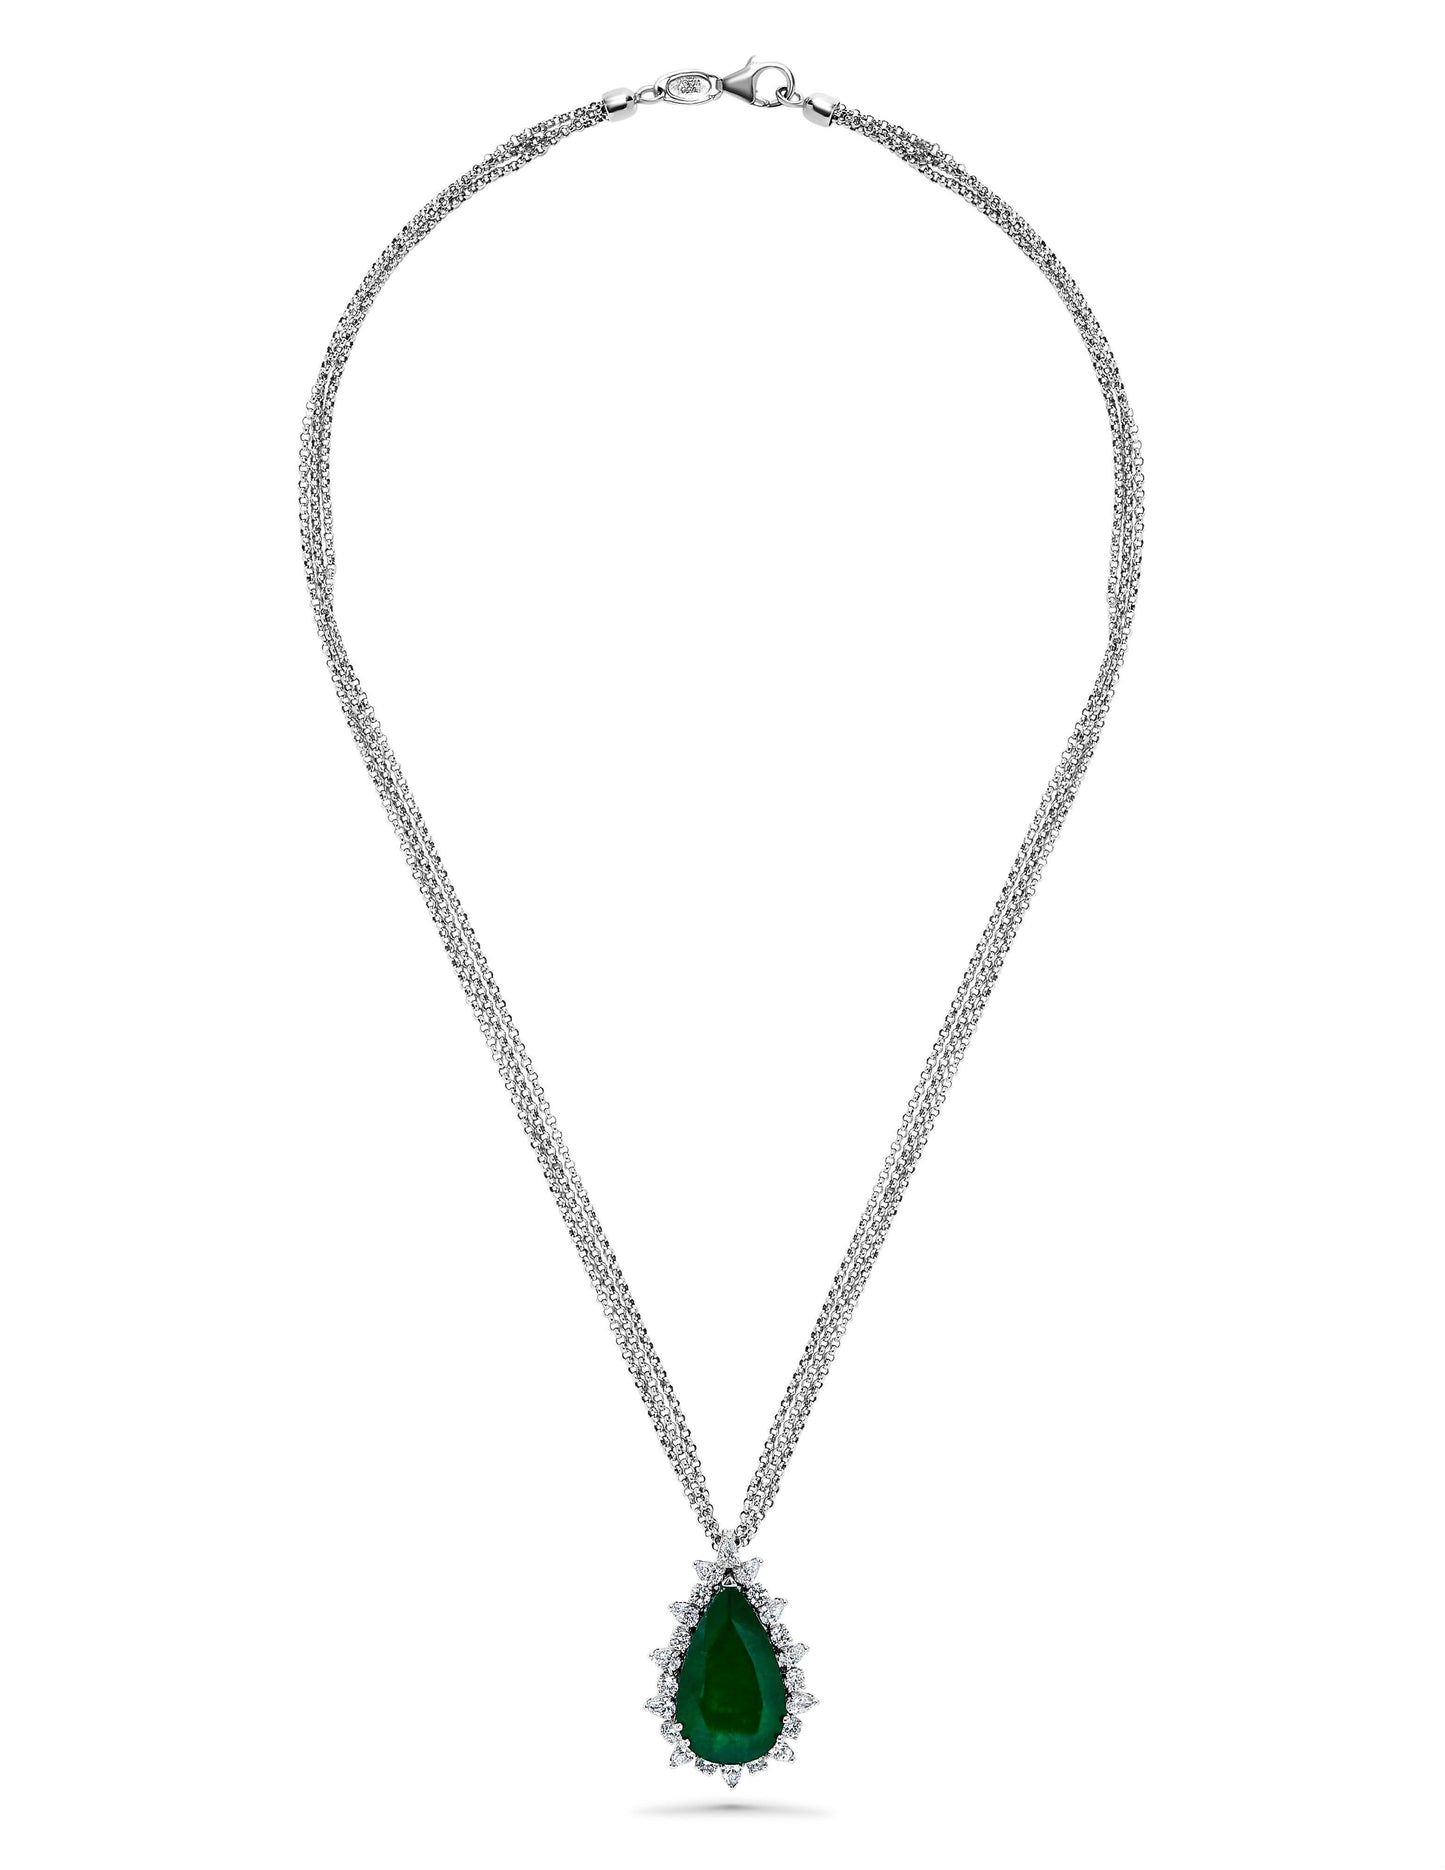 Emilio Jewelry 14.07 Carat Colombian Emerald Diamond Necklace